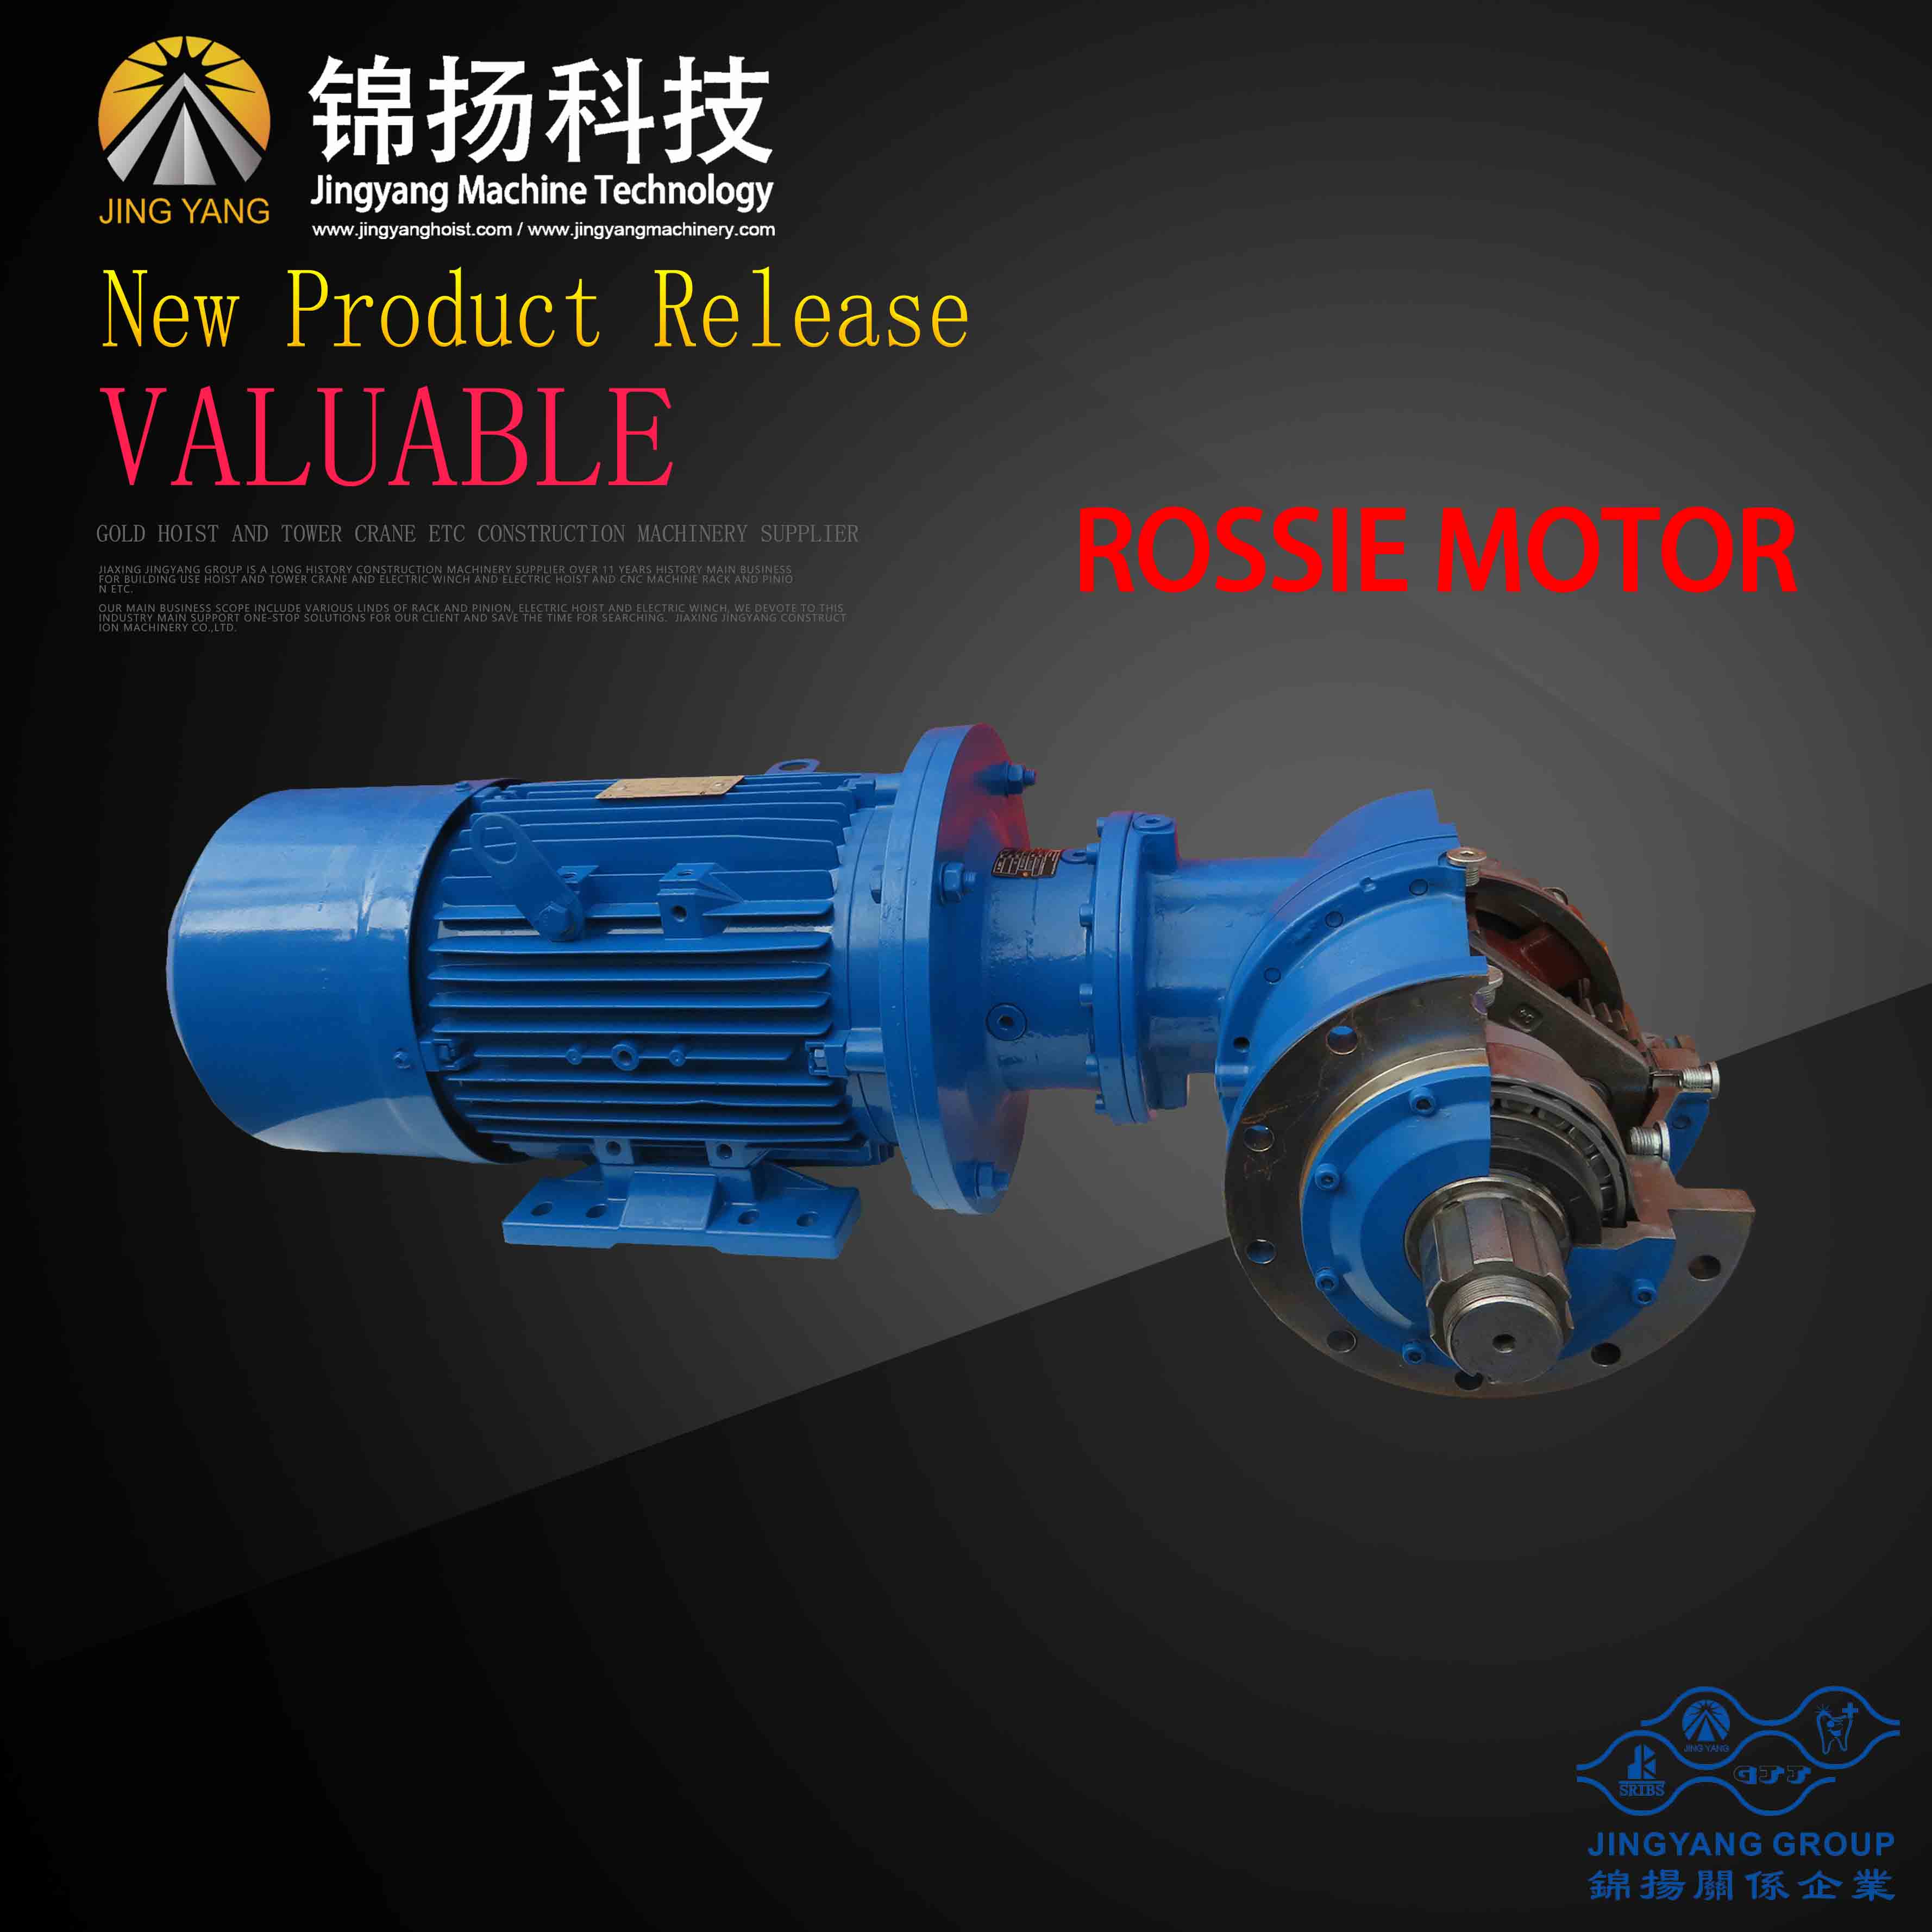 Hot sale Factory Universal Joint Bearing -
 GJJ passenger hoist Rossi motor – Jinyang